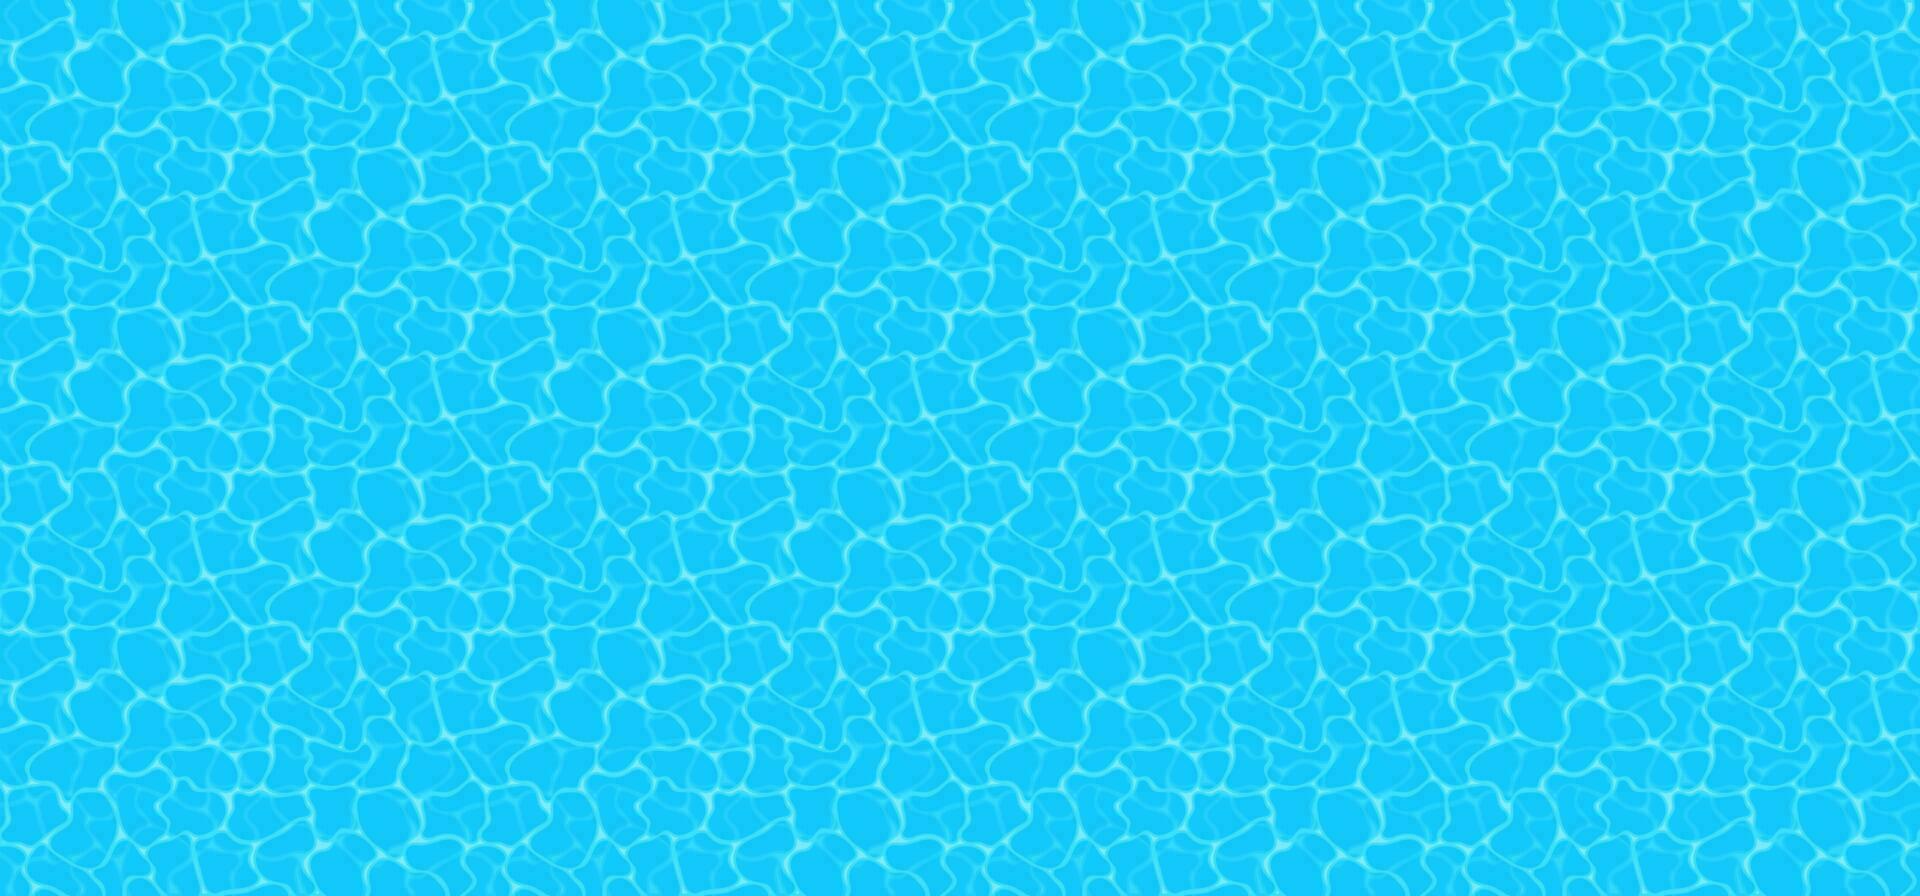 Blau Wasser Hintergrund. nahtlos Blau Wellen Muster. Wasser Schwimmbad Textur Unterseite Hintergrund. Vektor Illustration